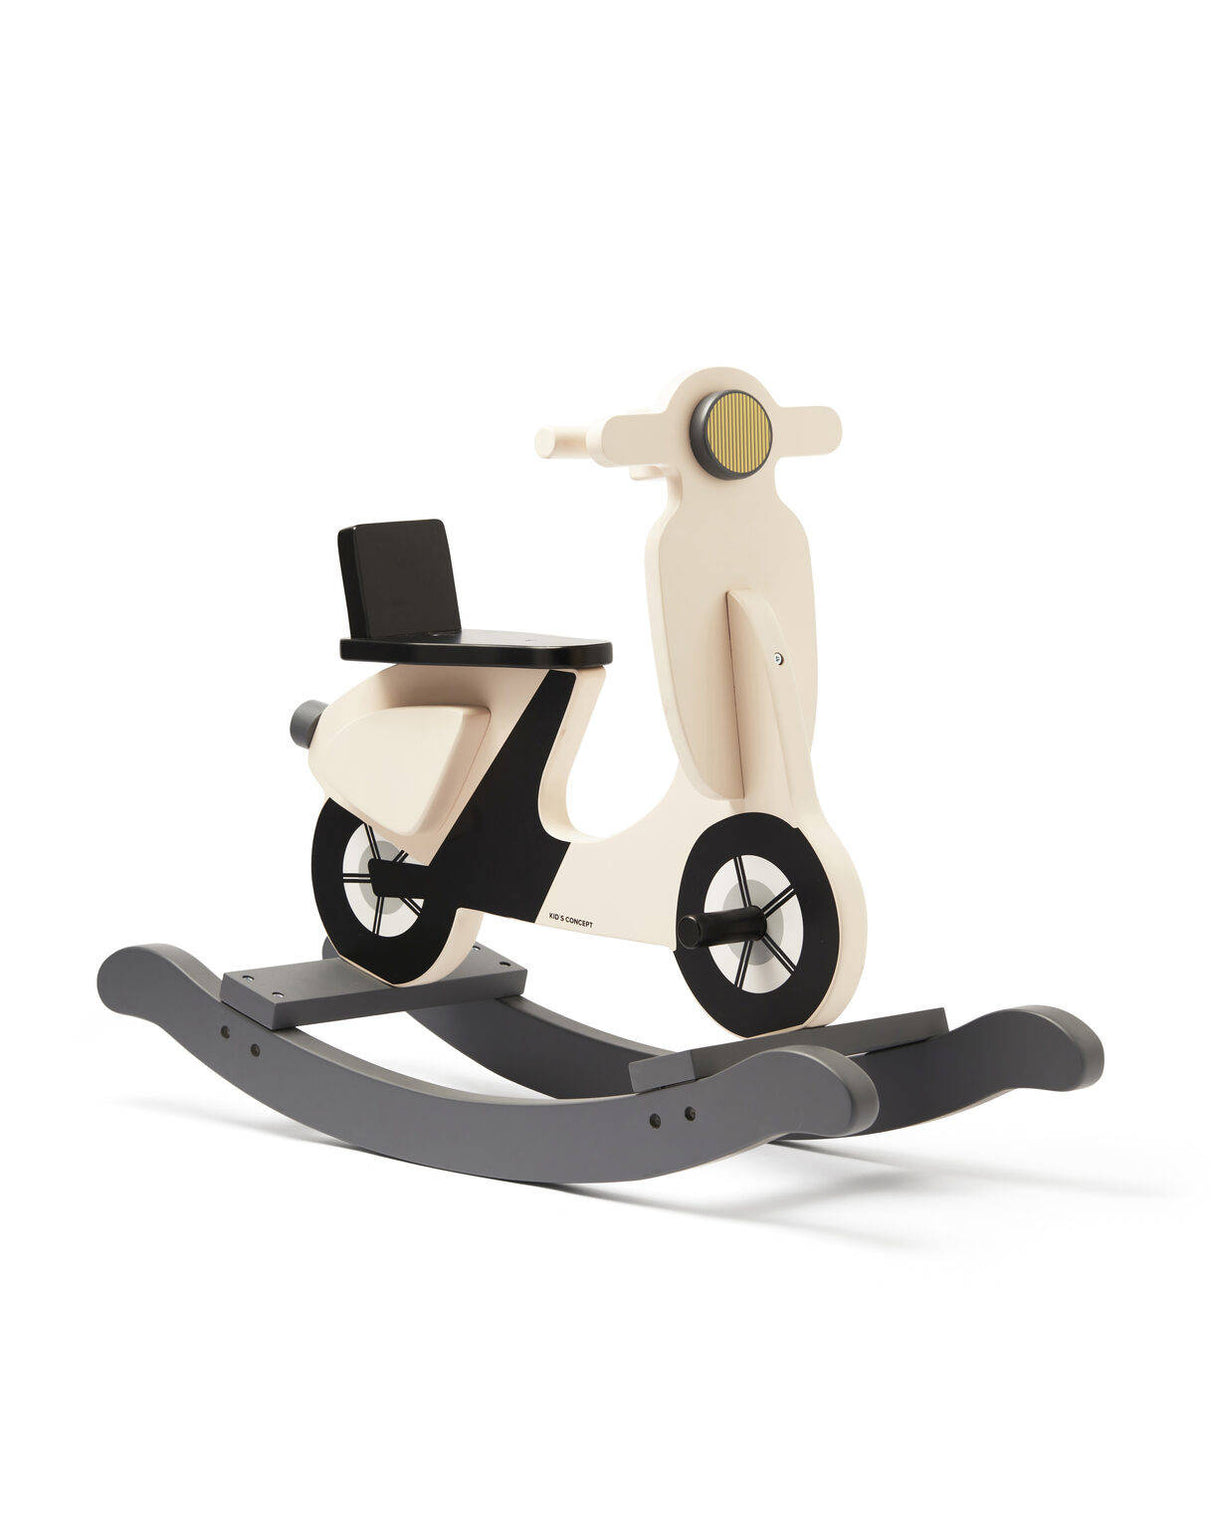 Bujak jeździk na biegunach Kids Concept Light beige, drewniany, bezpieczny, wygodny, idealny dla małych miłośników pojazdów